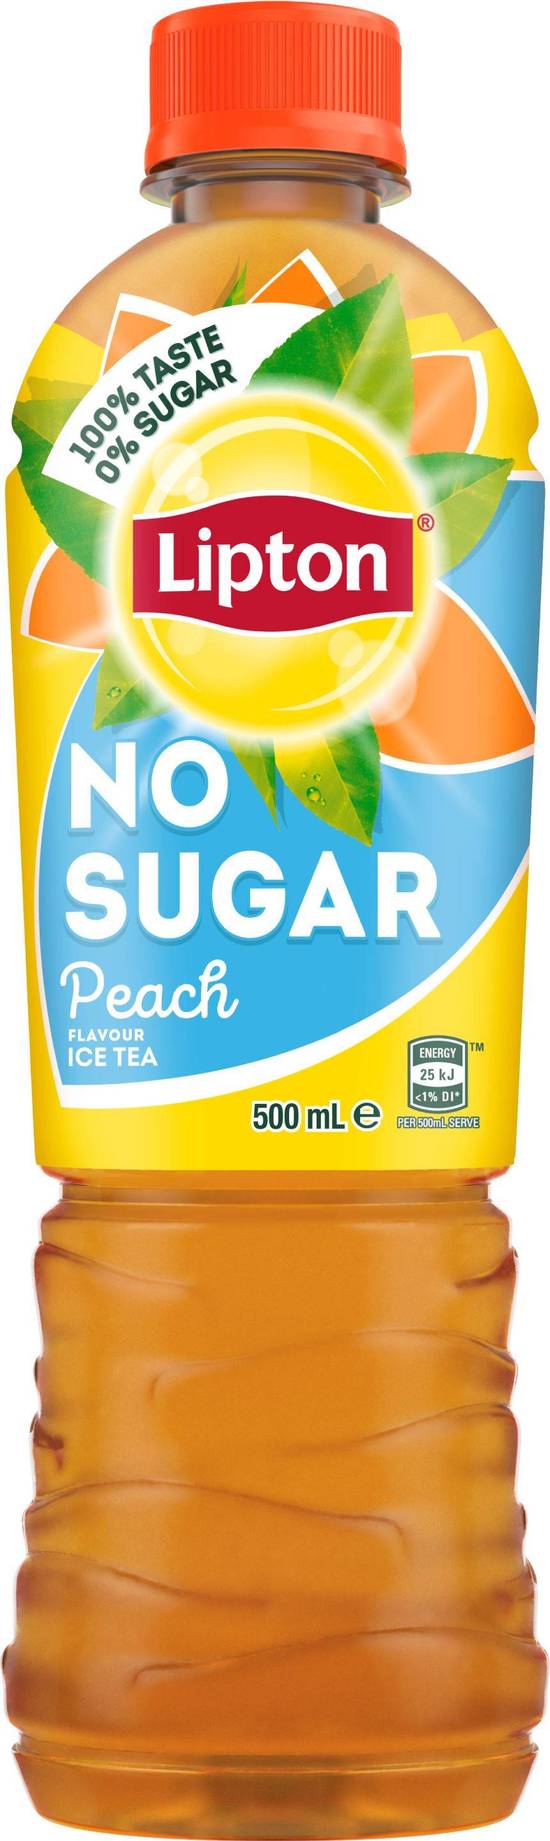 Lipton No Sugar Peach Iced Tea 500ml